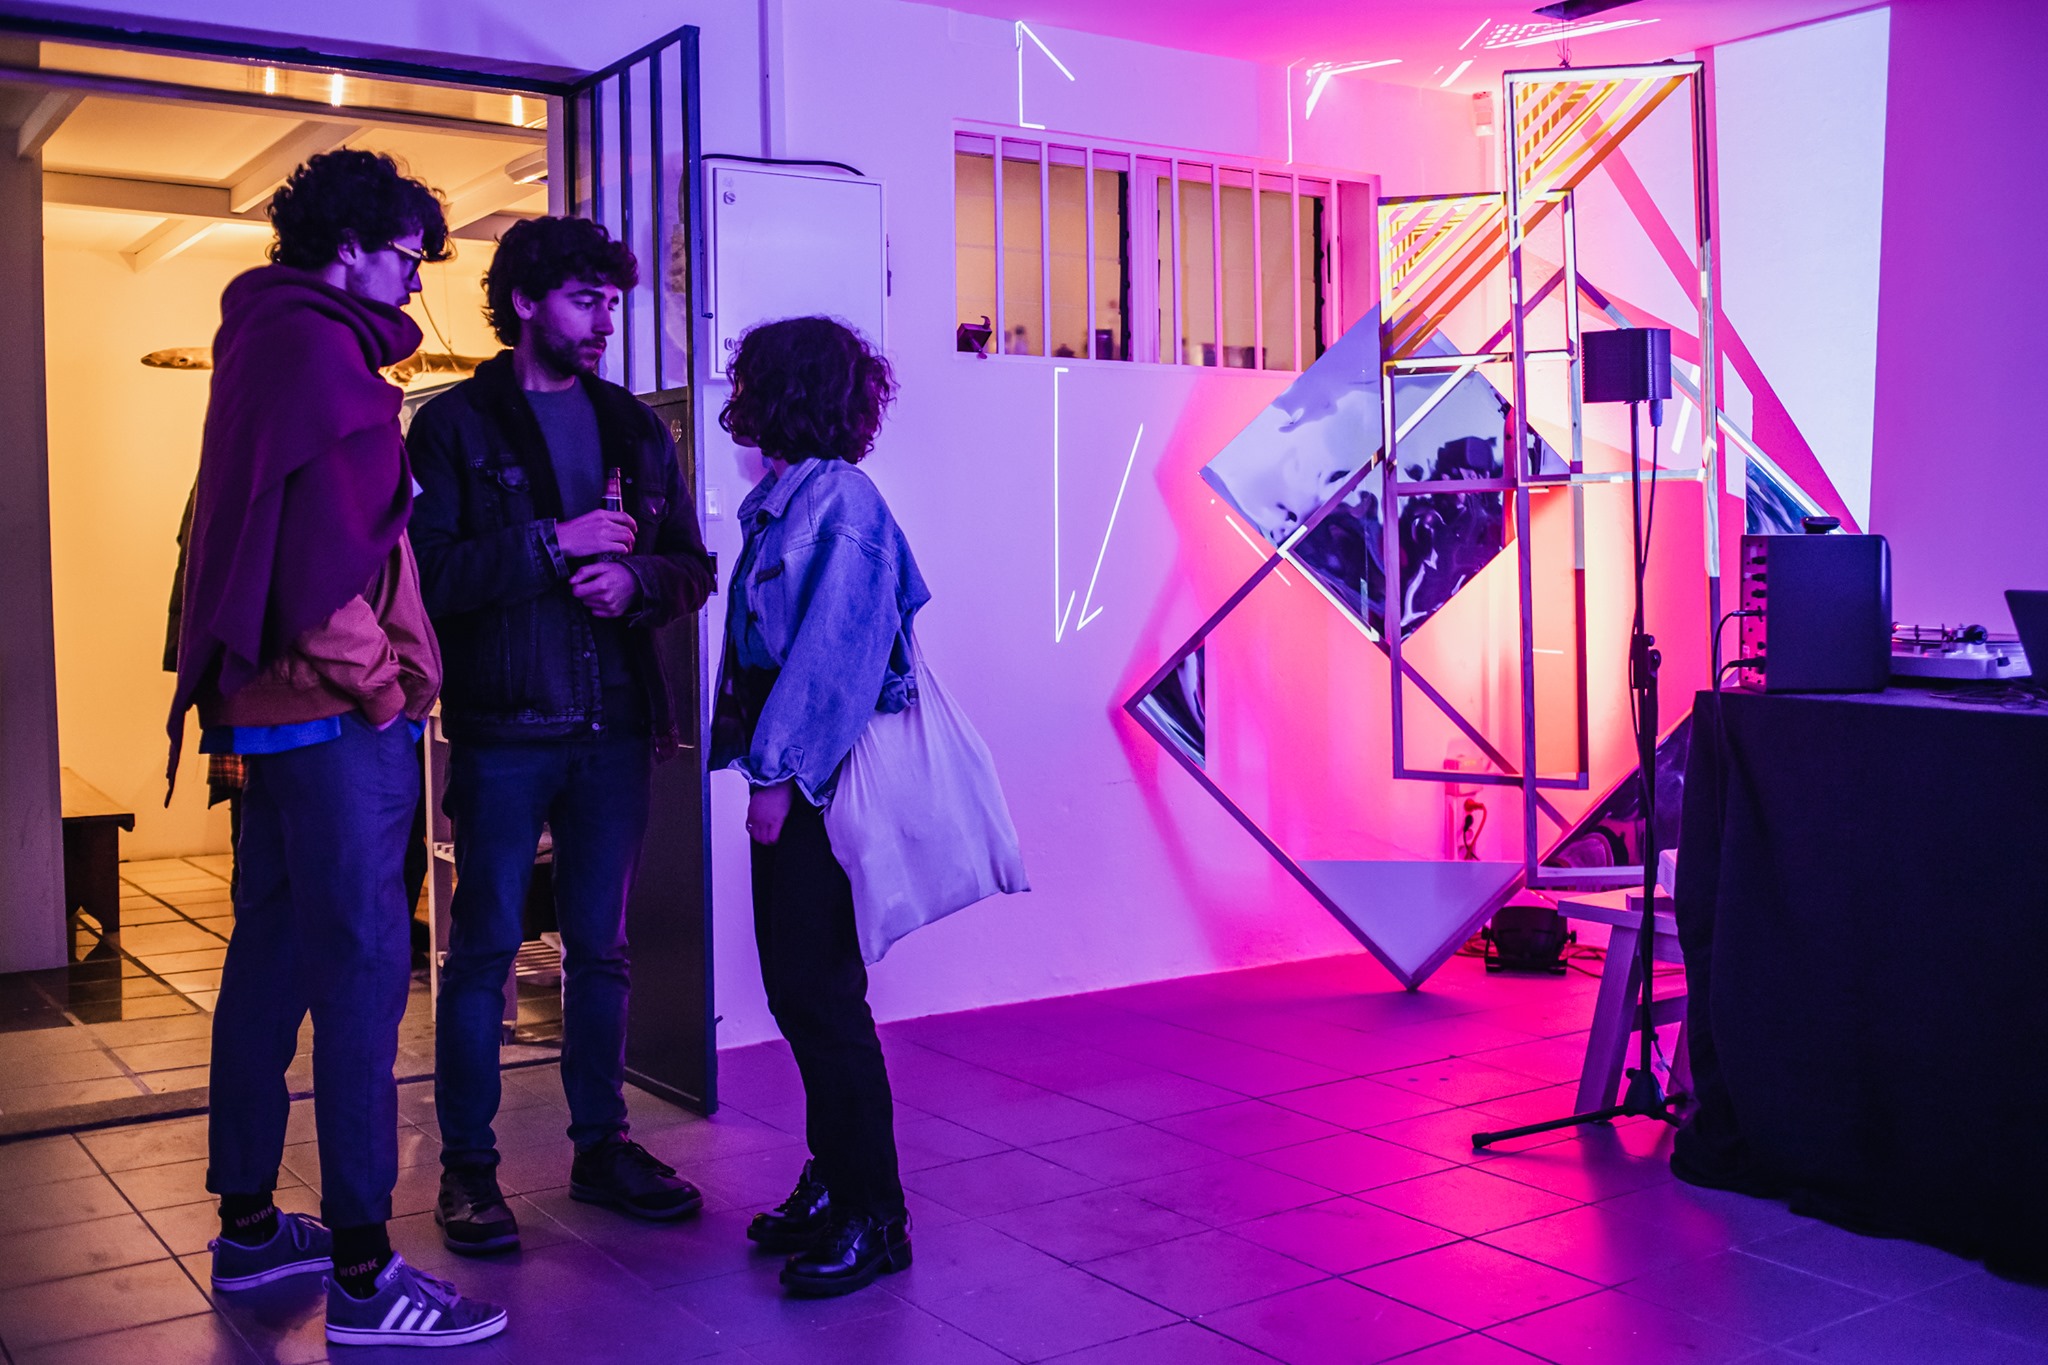 Troje ludzi, dwóch mężczyzn i kobieta stoją na korytarzu i rozmawiają, obok nich stoi podświetlona geometryczna konstrukcja, we fragment której wpasowano abstrakcyjny obraz.